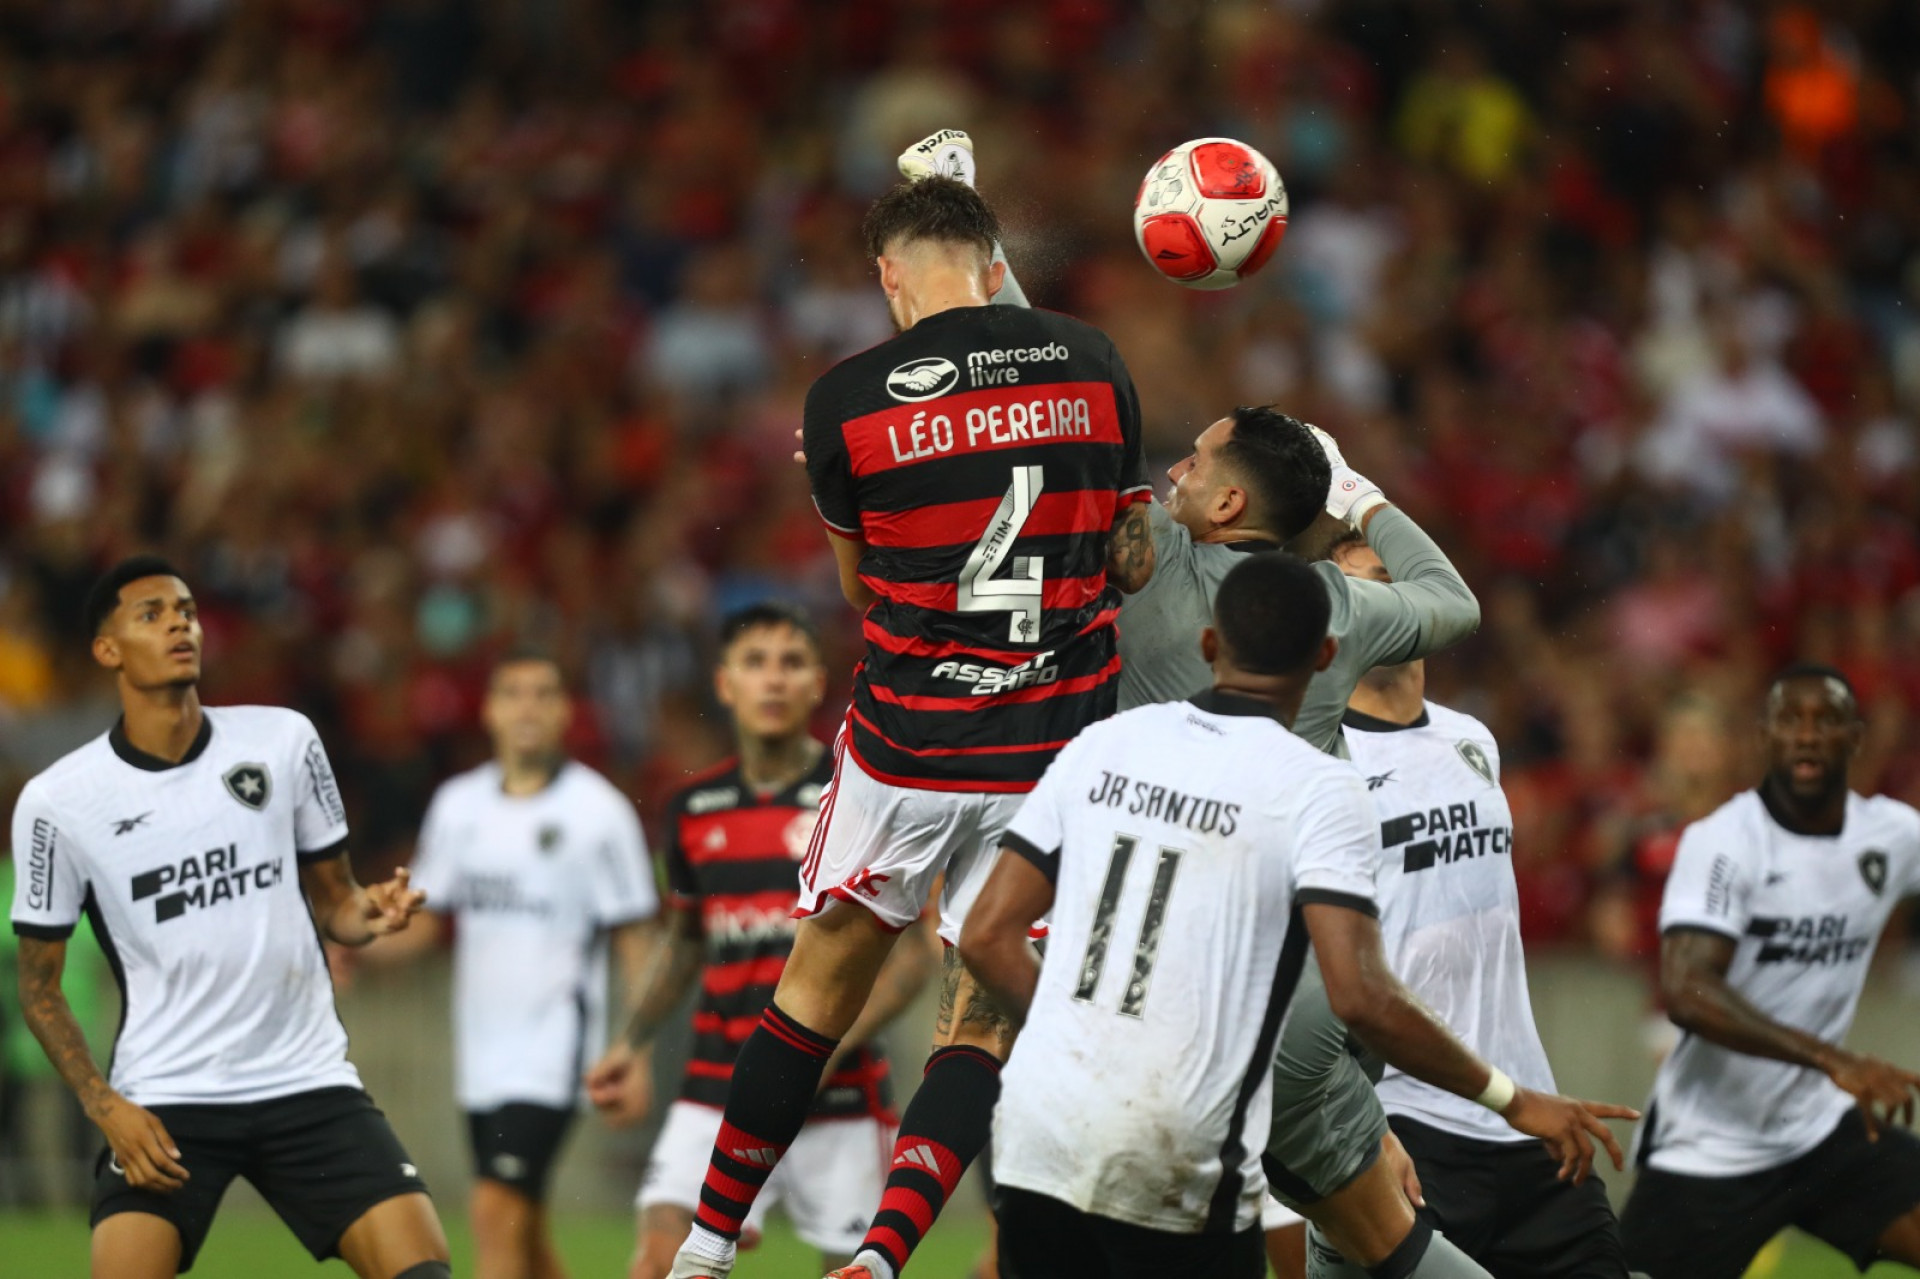 Momento em que Léo Pereira marcou o gol que garantiu a vitória do Flamengo sobre o Botafogo - Gilvan de Souza /Flamengo